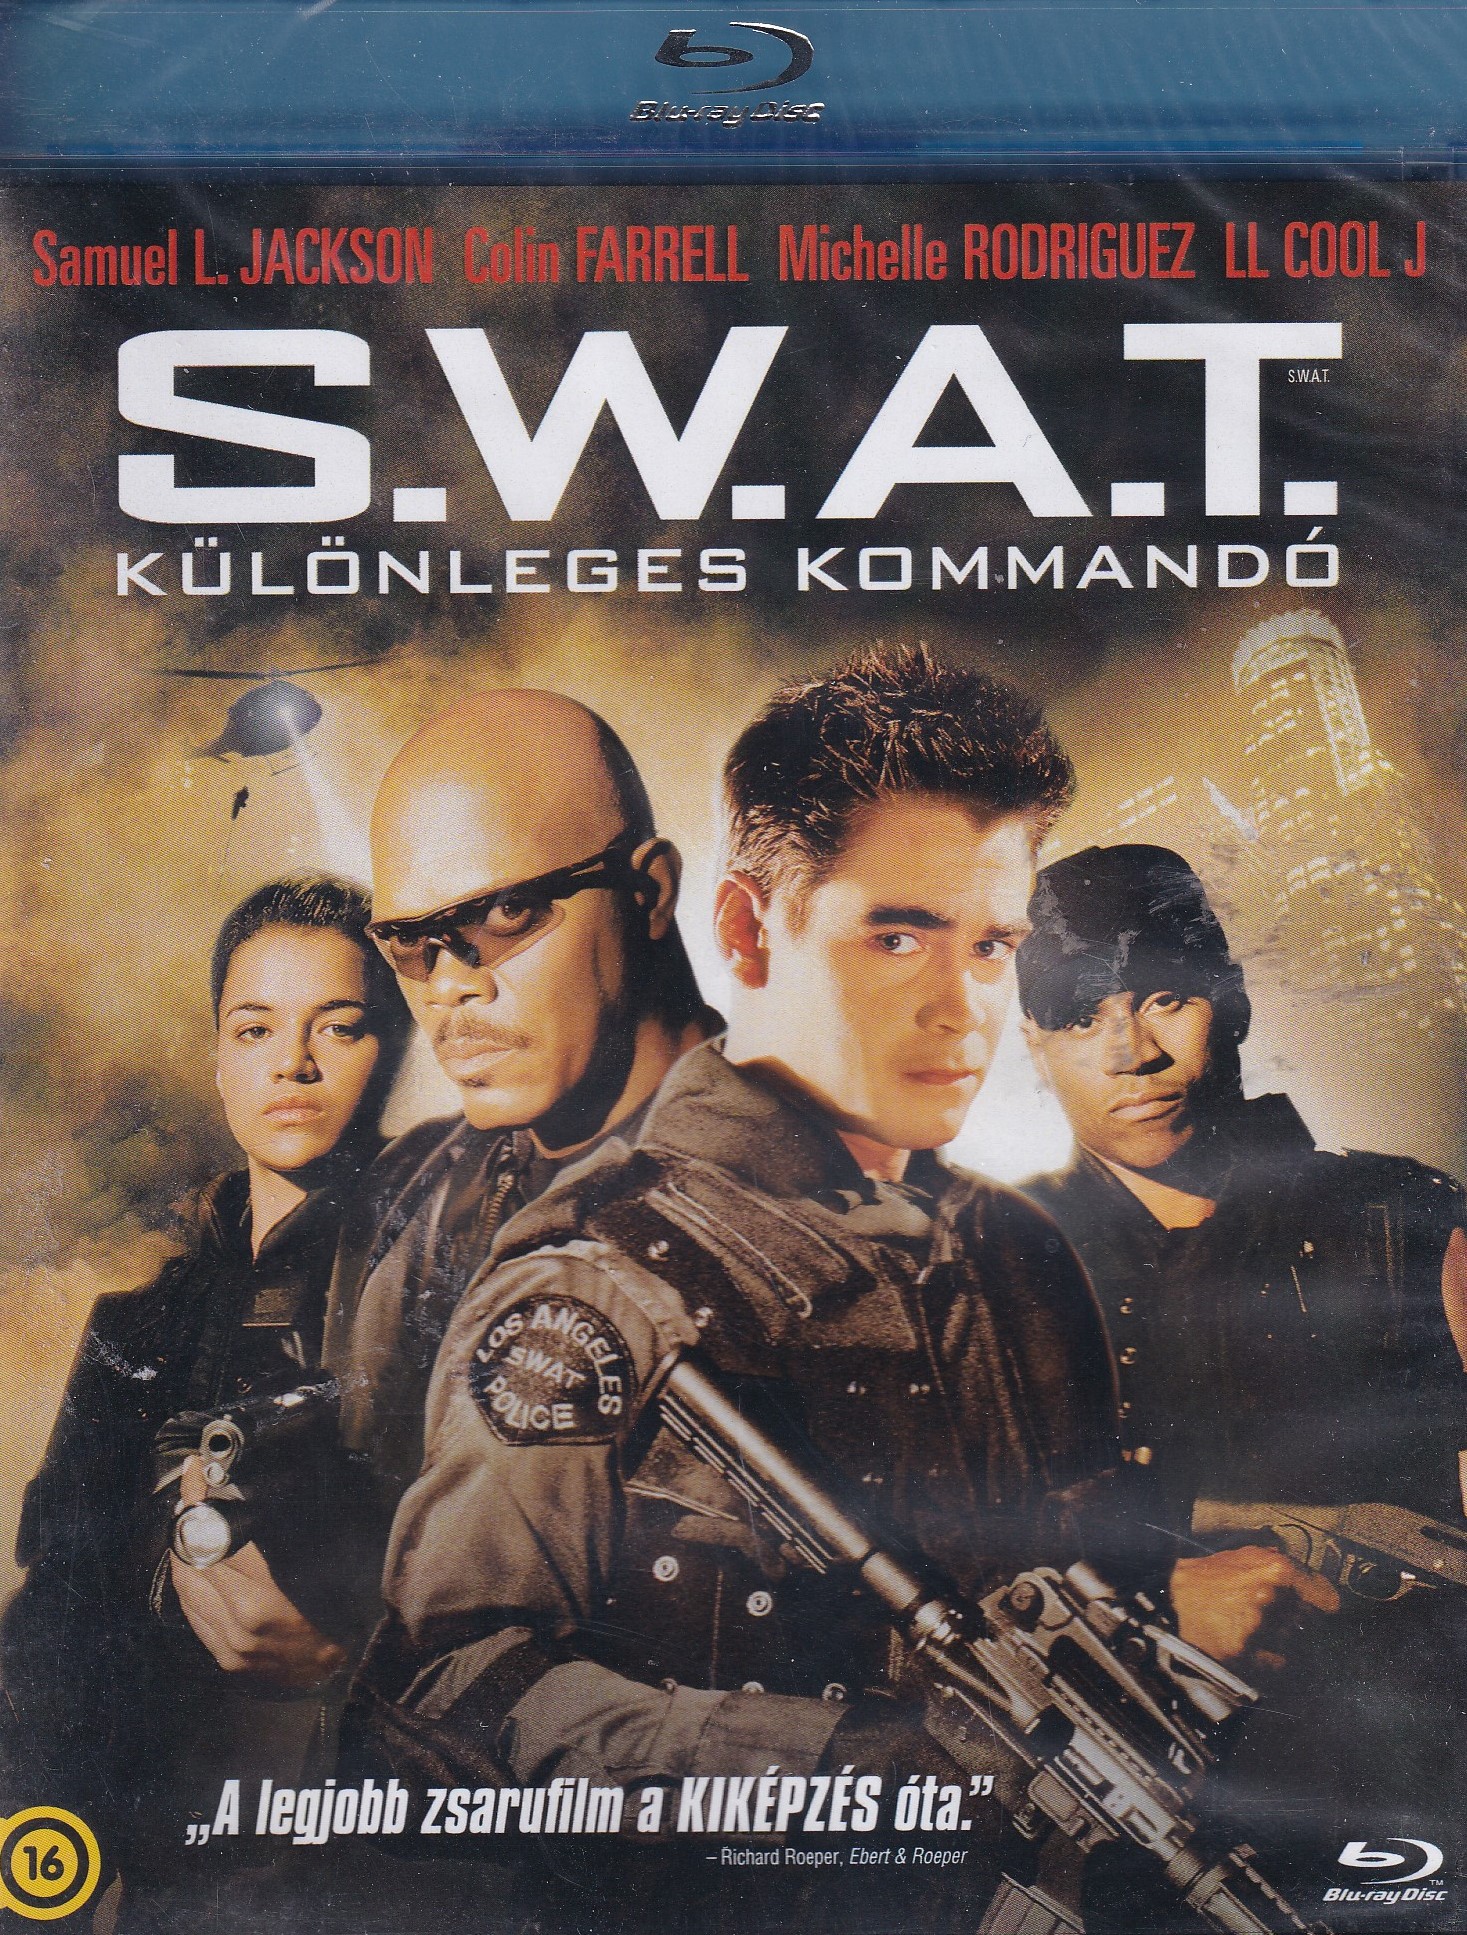 S.W.A.T. - Különleges kommandó Blu-ray